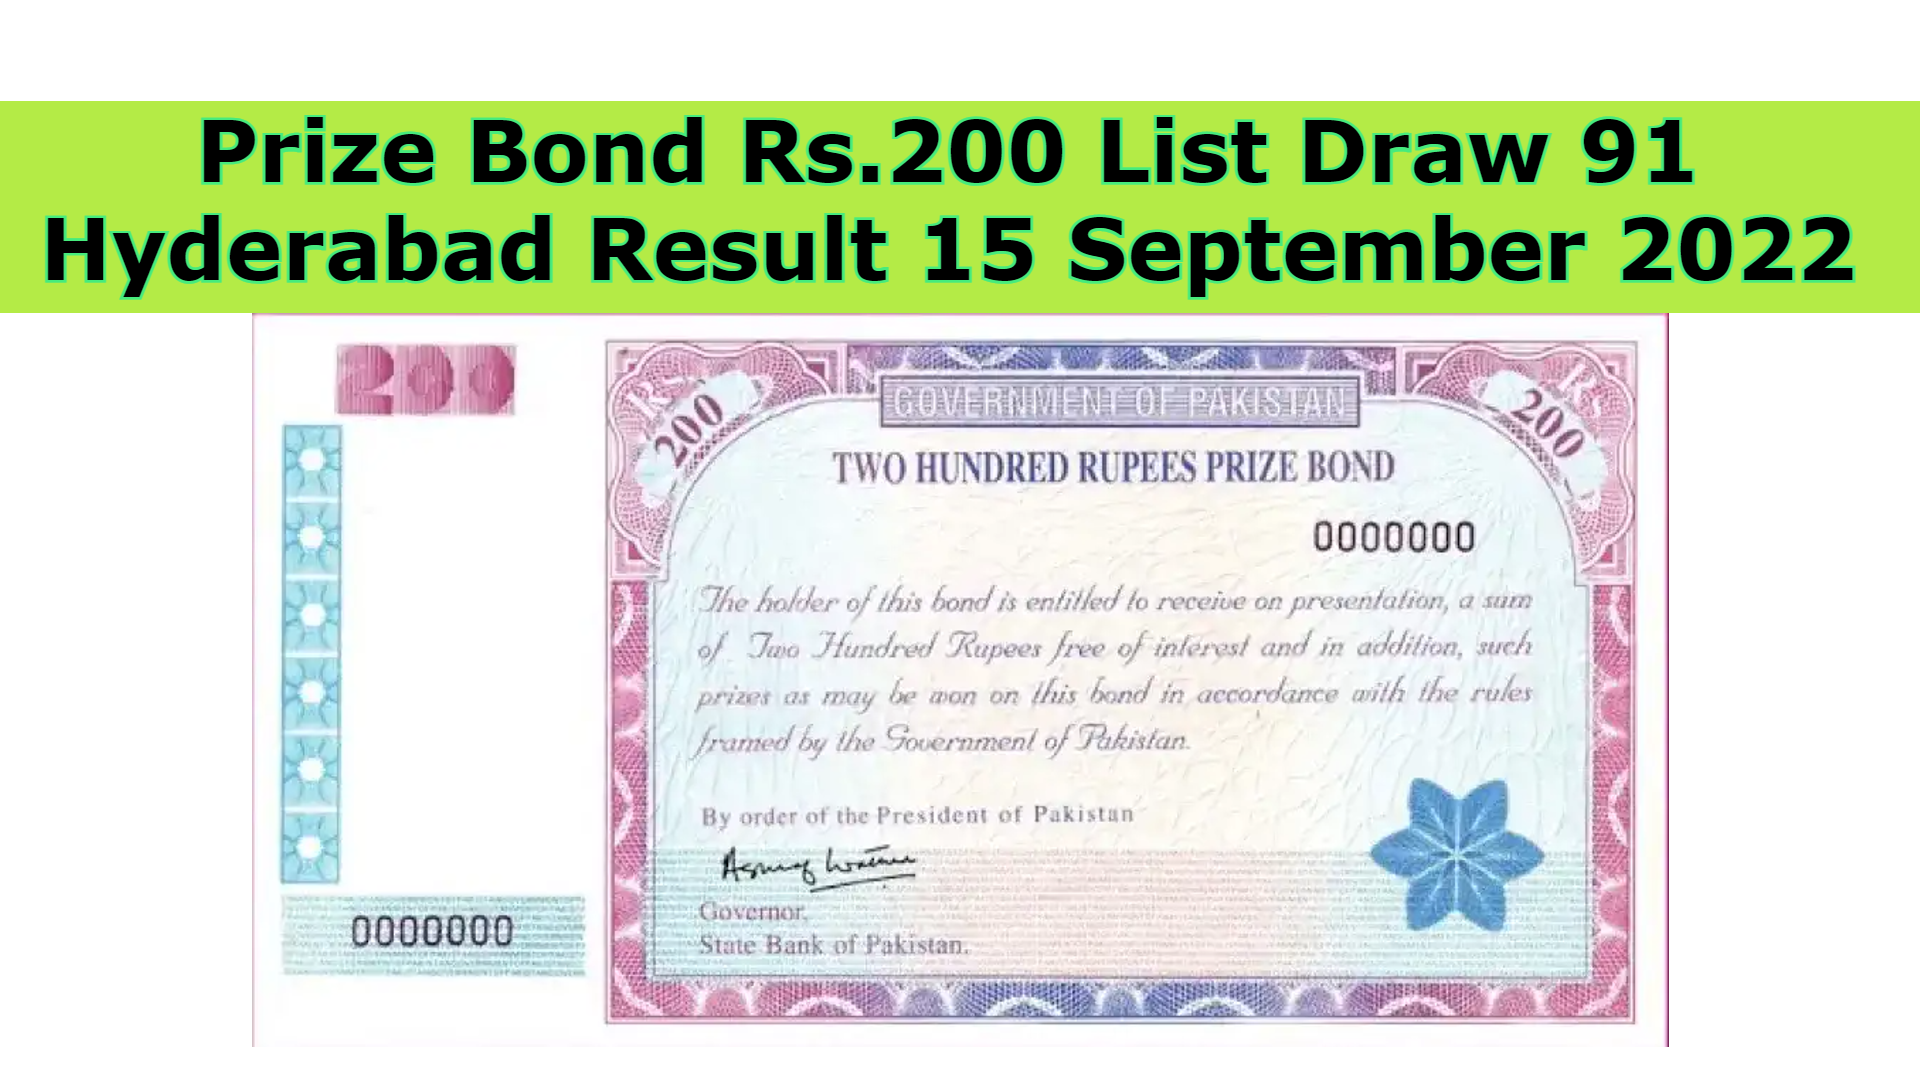 Prize Bond Rs.200 List Draw 91 Hyderabad Result 15 September 2022